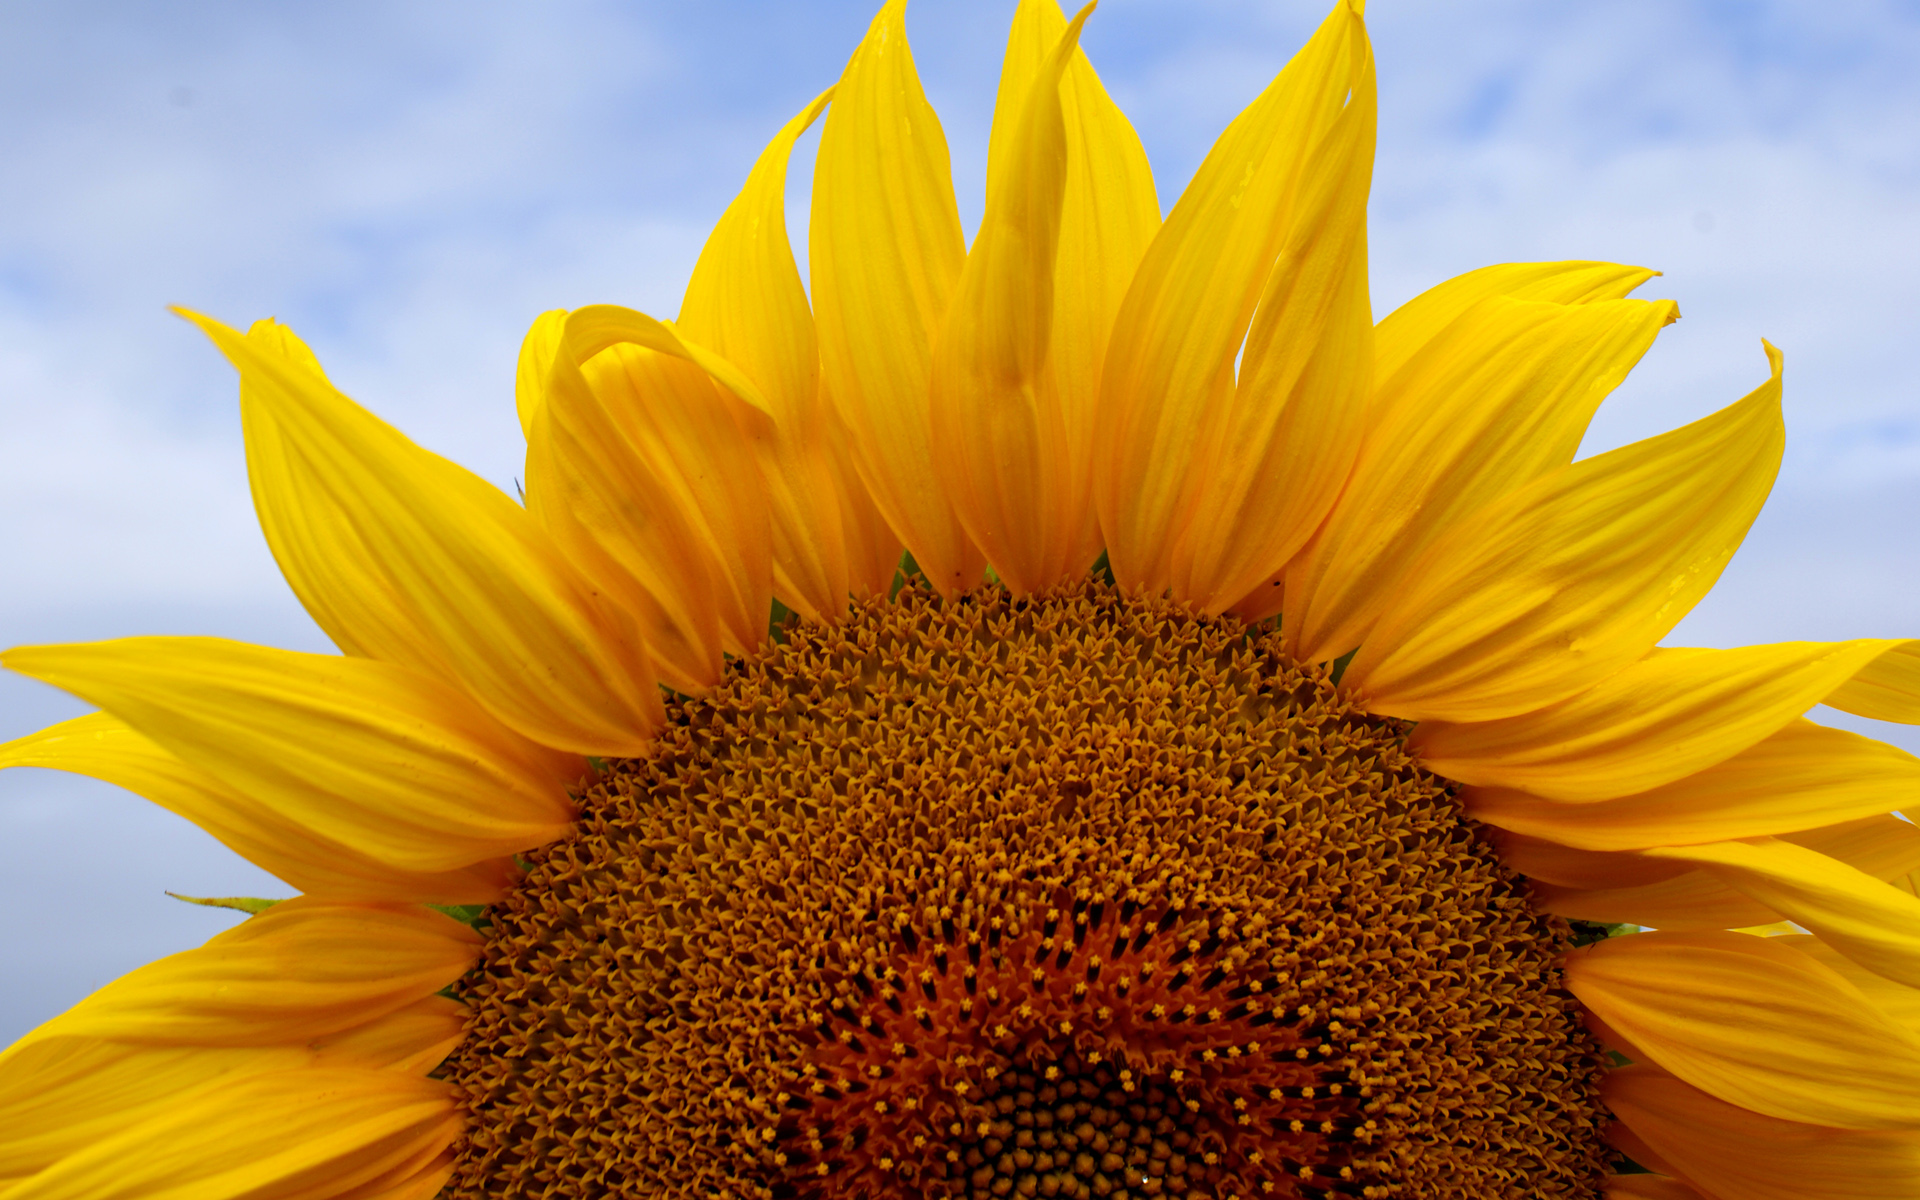 Sunflower Desktop Wallpaper ImgHD Browse And